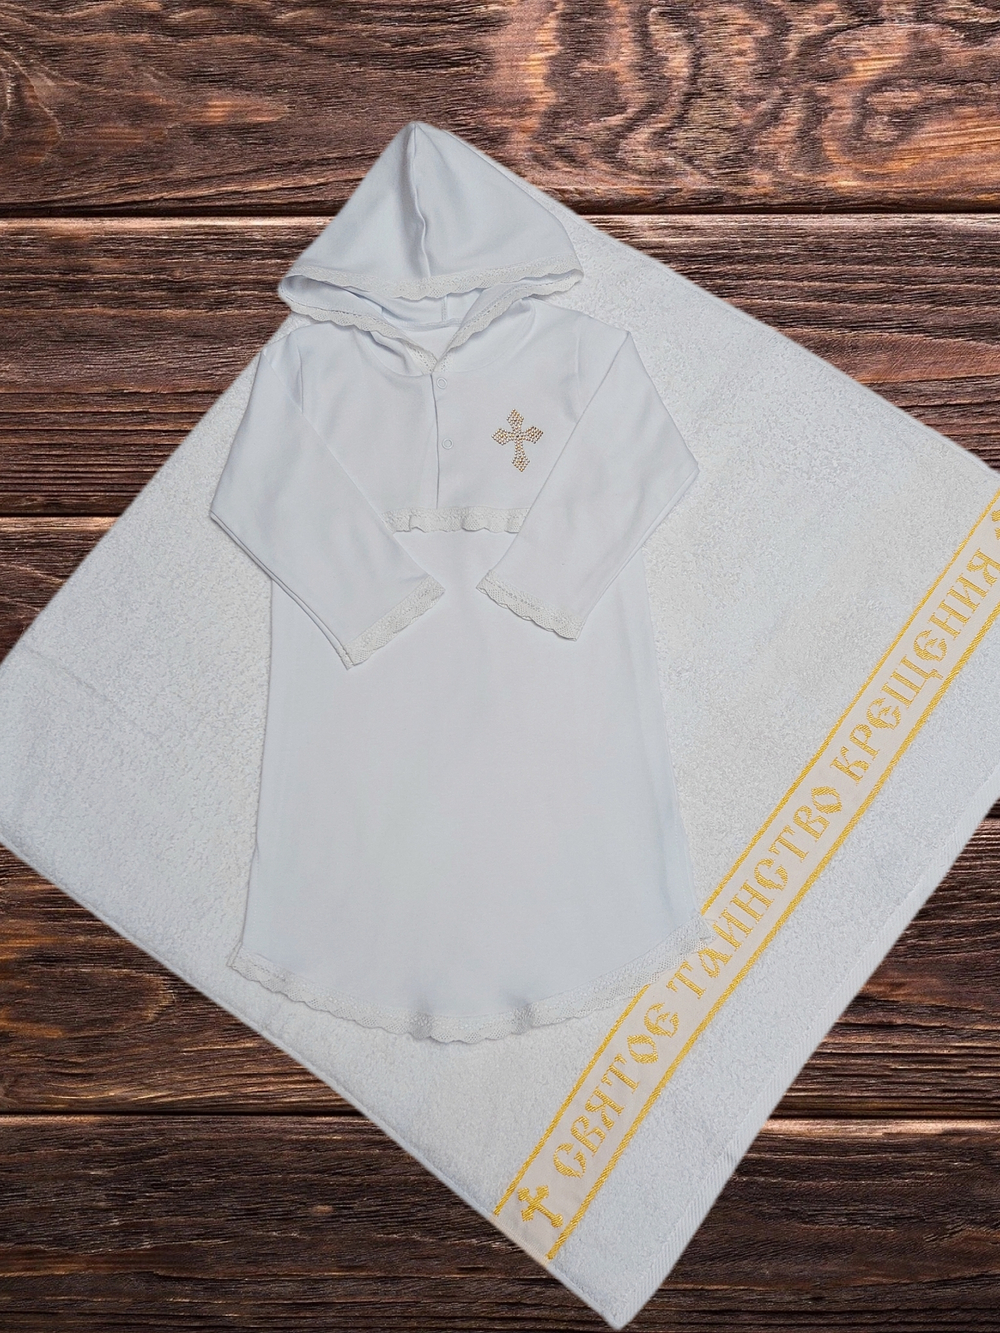 Крестильный набор Святое Танство (рубашка с капюшоном) рост 74-80